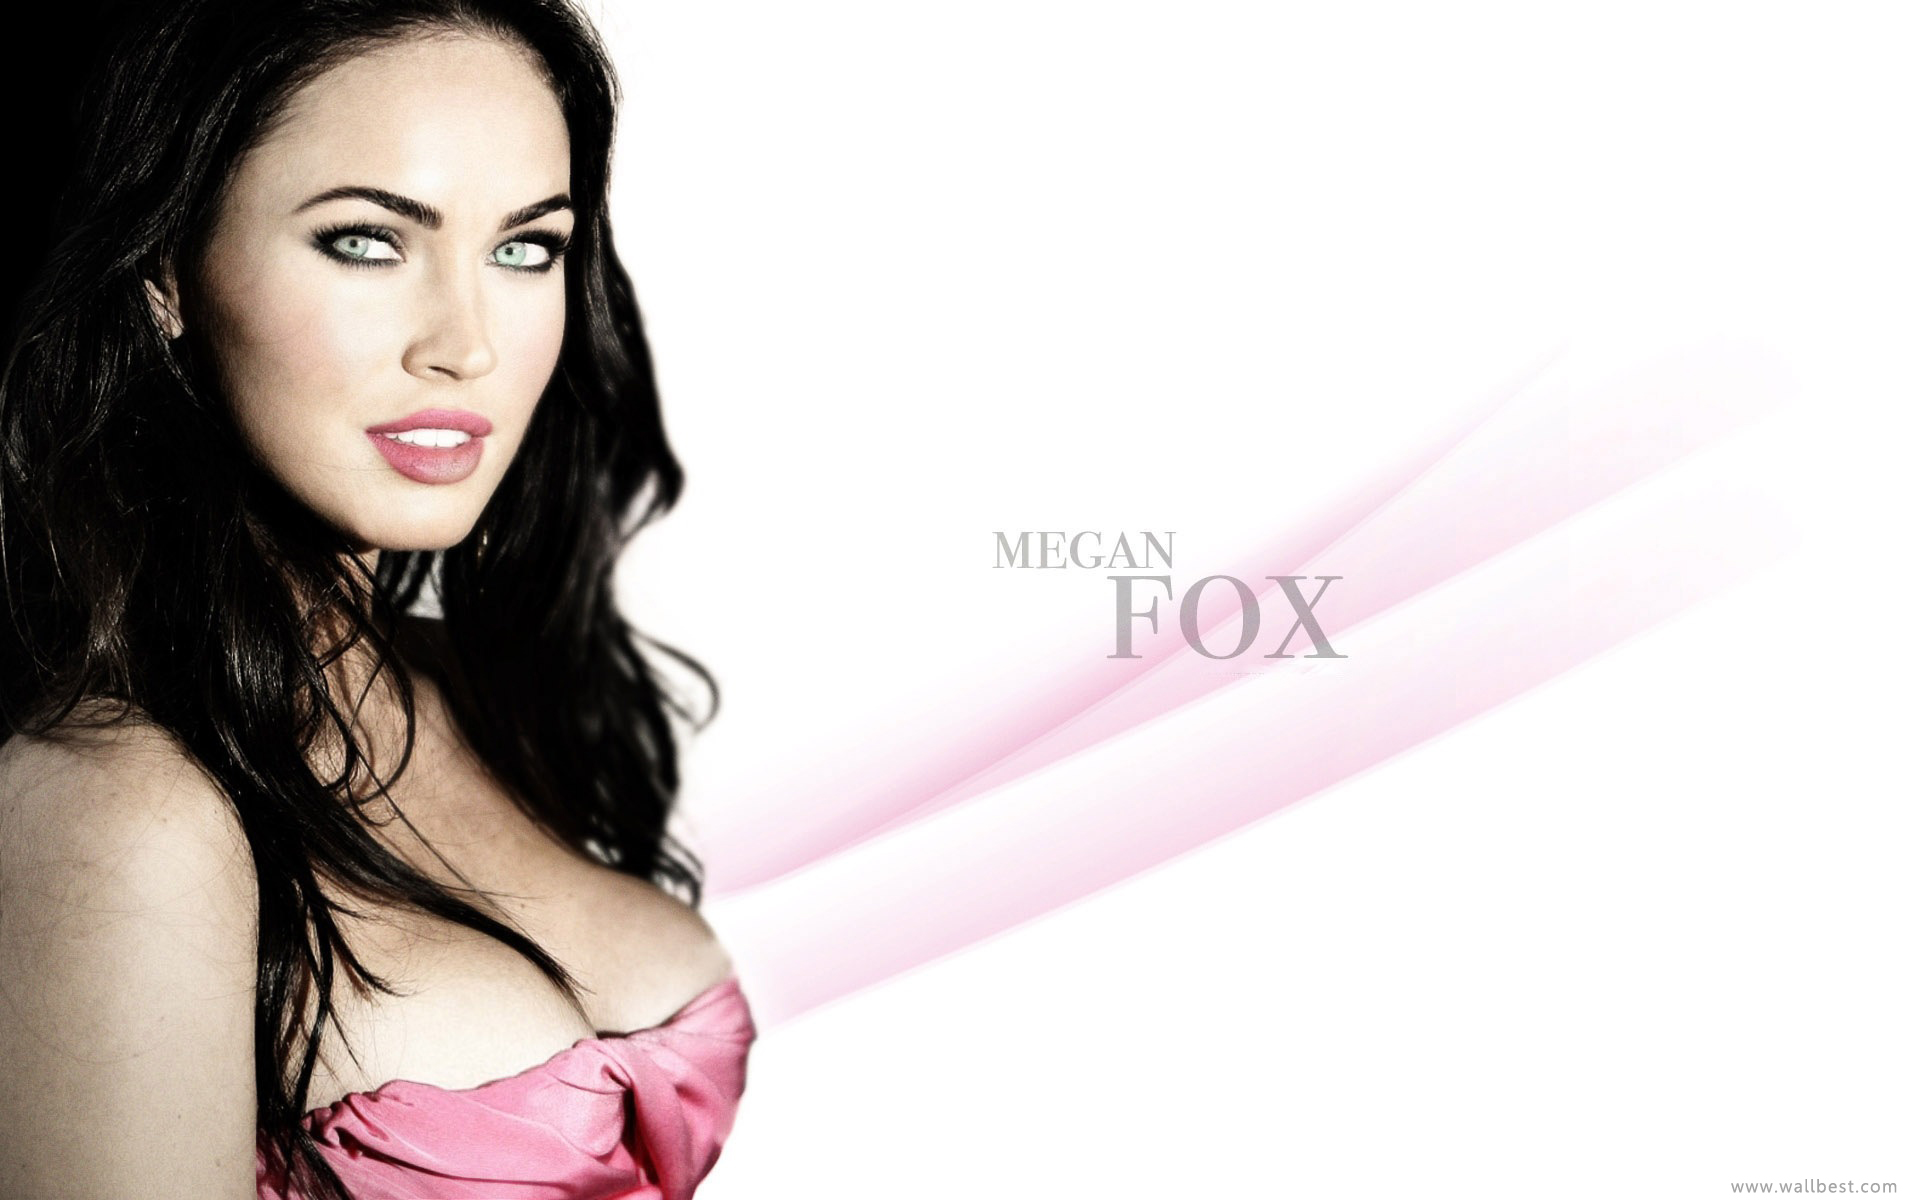 Celebrity Megan Fox Wallpaper Imagebank Biz